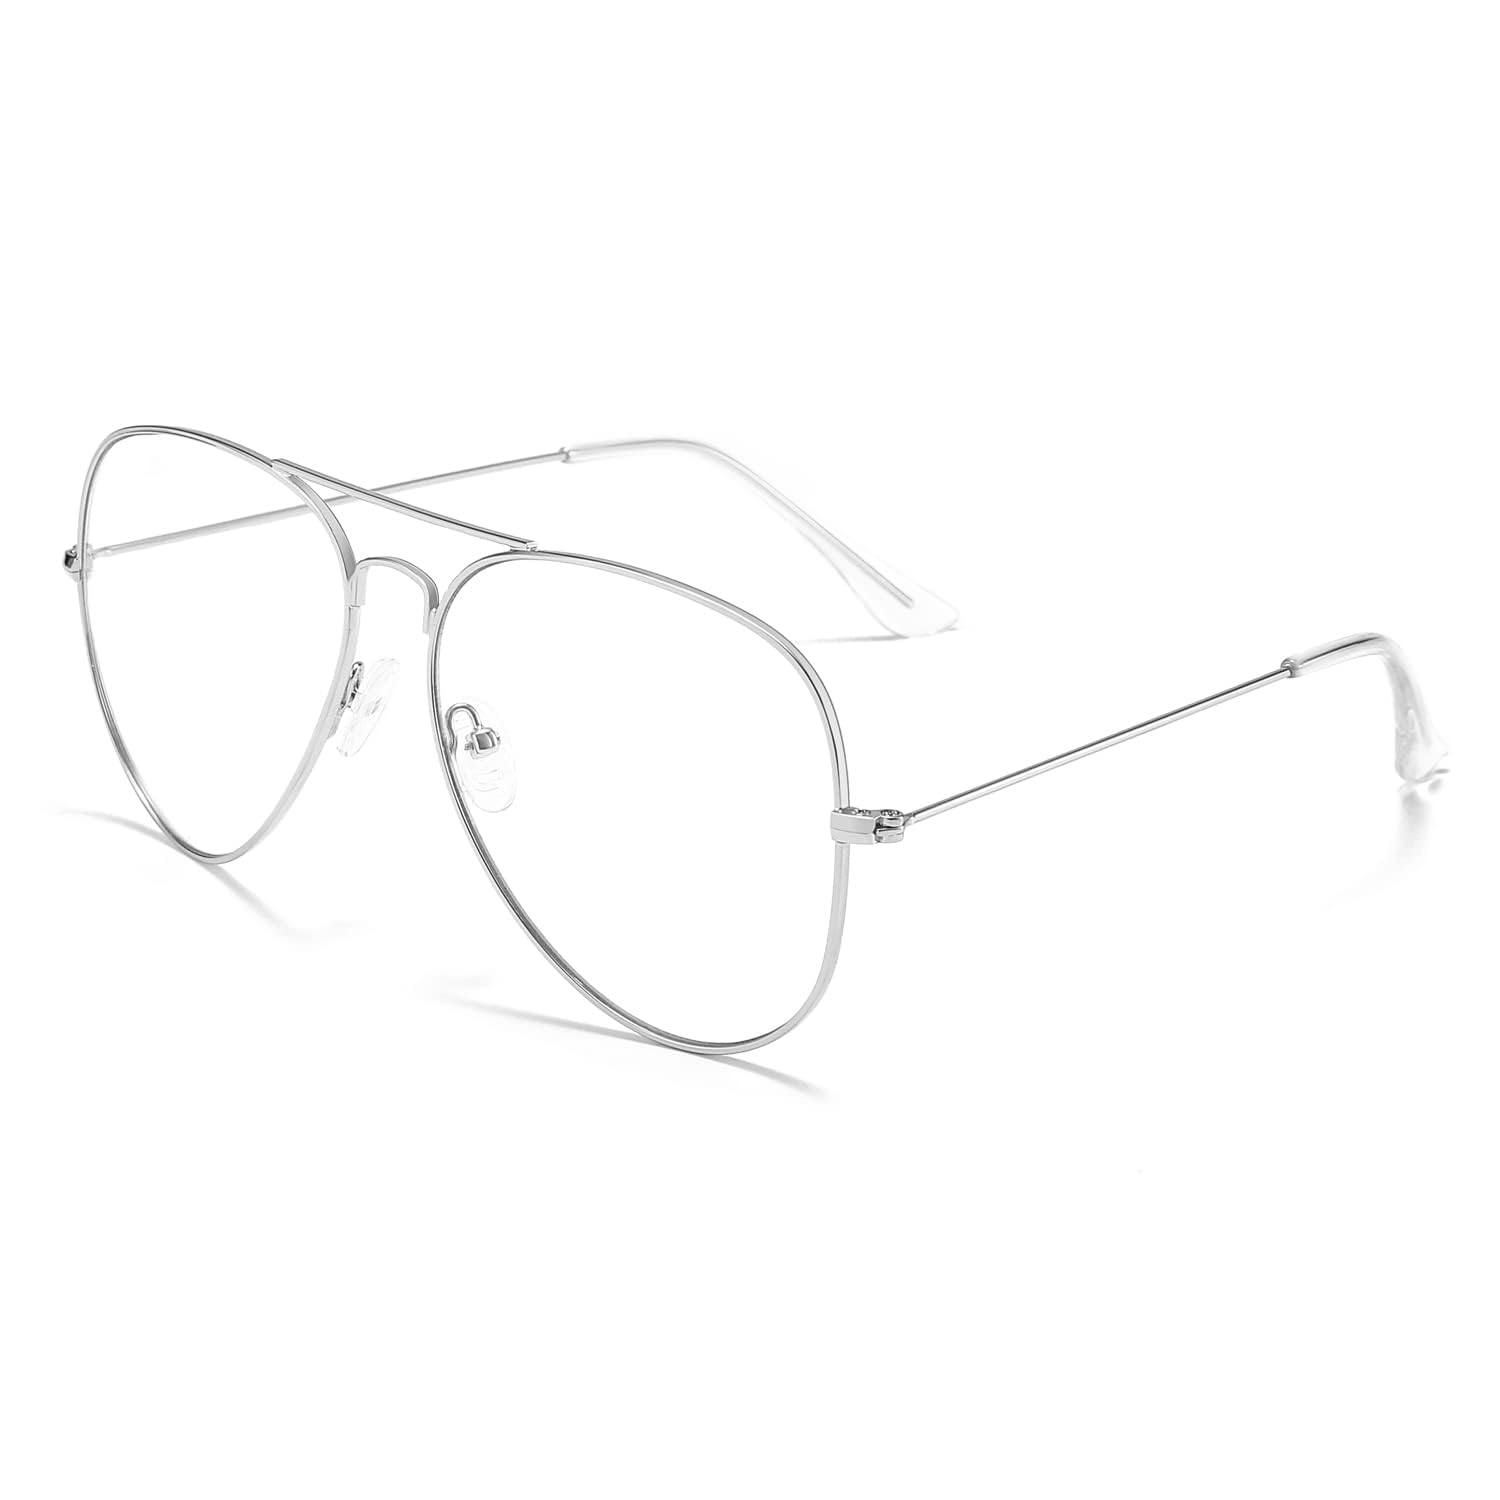 商品情報商品の説明主な仕様 レンズの交換、非処方箋：パイロットスタイルの非処方箋の眼鏡には、HDレンズが使用されており、お医者様に処方箋付きのレンズに交換することができます。これらの眼鏡は、年配者、若者、女性、男性に適しています。brパイロットスタイルの眼鏡：おしゃれなフェイクパイロットスタイルの眼鏡で、超軽量の金属フレームと高解像度の衝撃に強いレンズを使用しています。これにより、魅力的なスタイルを持ちながら、風や塵から目を守ります。br快適なデザイン：軽量のフレームには、肌に優しい取り外し可能なプラスチック製の鼻パッドと滑り止めのデザインが備わっており、長時間の着用でも快適な体験ができます。まるで鼻に羽毛をつけているようです。男女問わずお使いいただけます。br高品質な素材：高品質な軽量金属フレームに光沢のあるコーティングが施されており、耐久性があり見た目もエレガントです。これらのフェイク眼鏡は、高級なファッションアクセサリーとしても、年中お使いいただけます。br60日間の保証? Dollgerのすべてのお客様は、60日間の保証を受けることができます。第三者の会社がすべてのボックスの完全性とレンズの品質を二重でチェックしています。